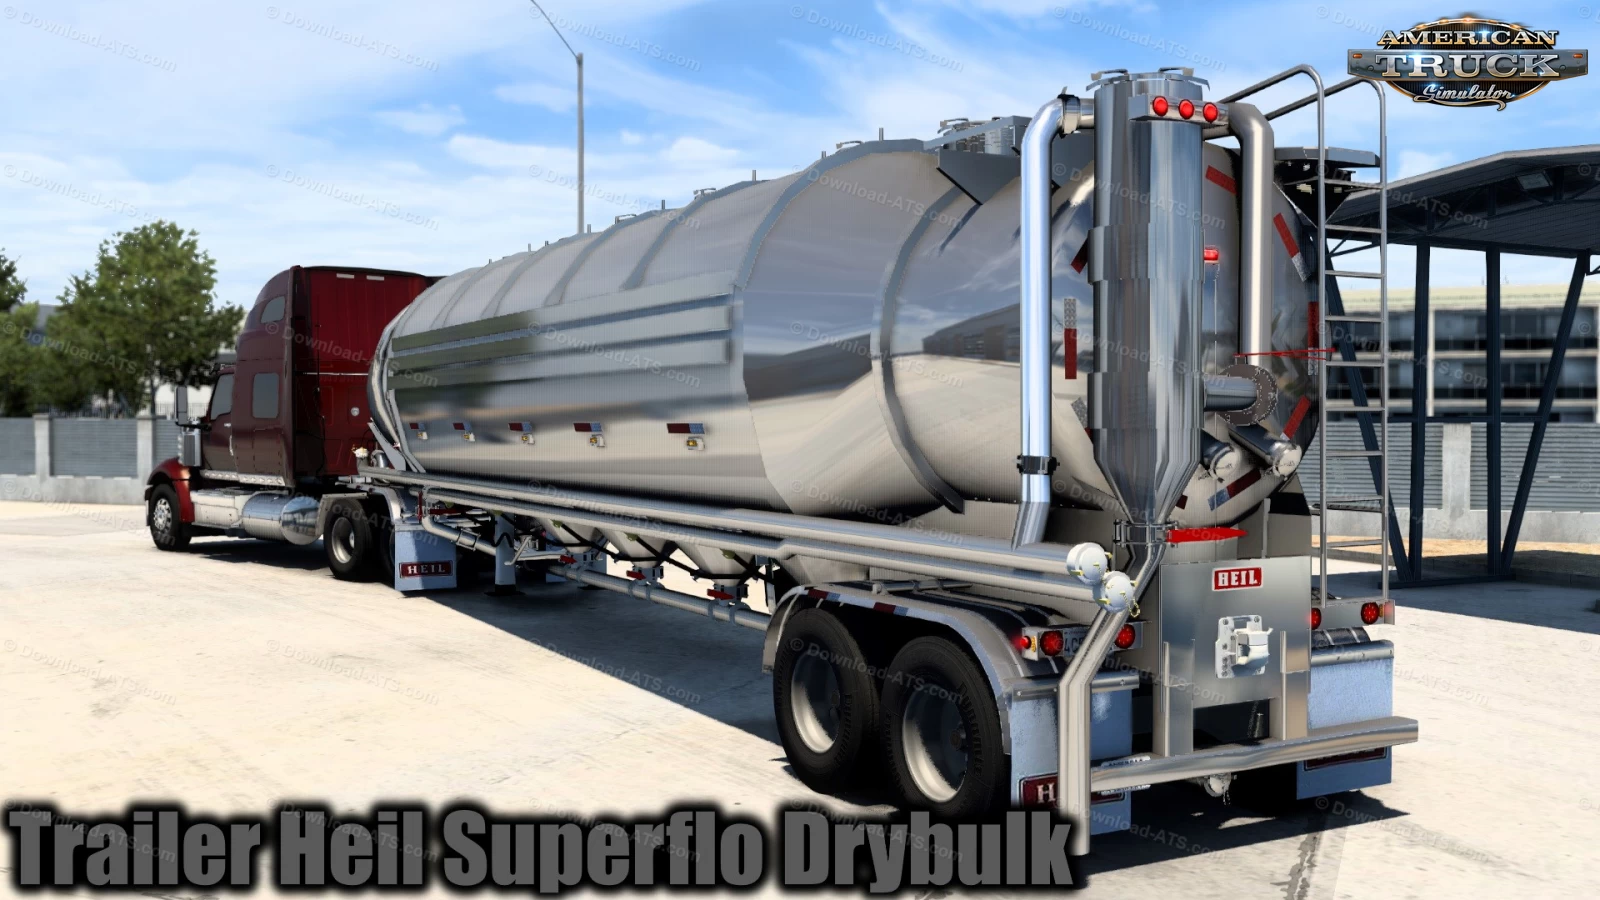 Trailer Heil Superflo Drybulk Ownable v1.3 (1.41.x) for ATS